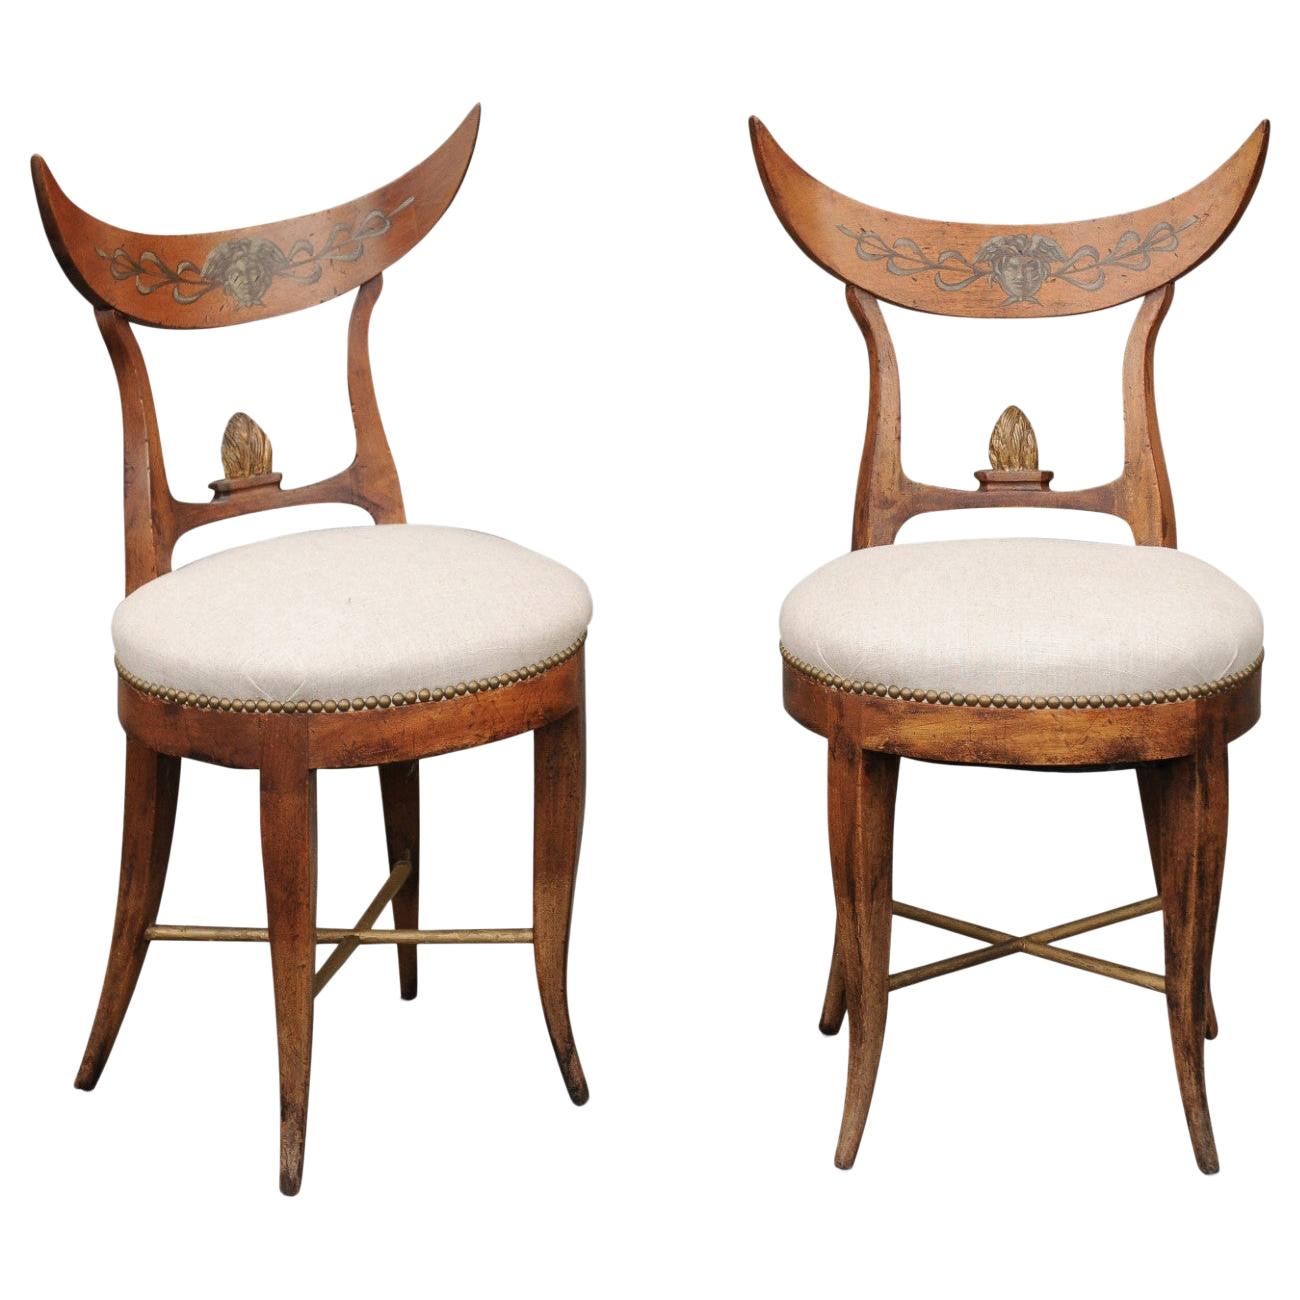 Paire de chaises d'appoint italiennes des années 1860, tapissées, avec dossier en croissant et pieds en sabre